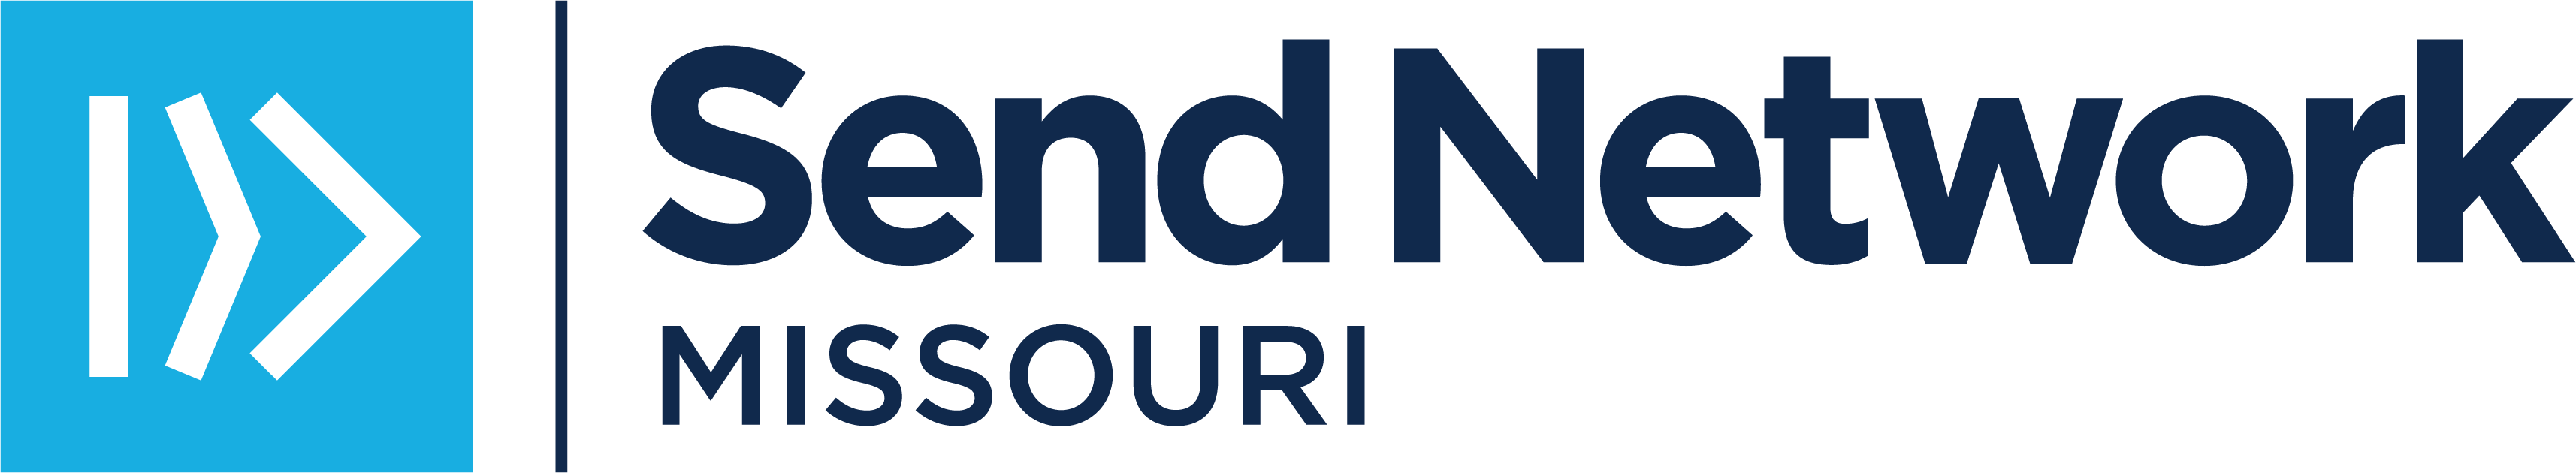 SN Missouri Logo_BlueNavy